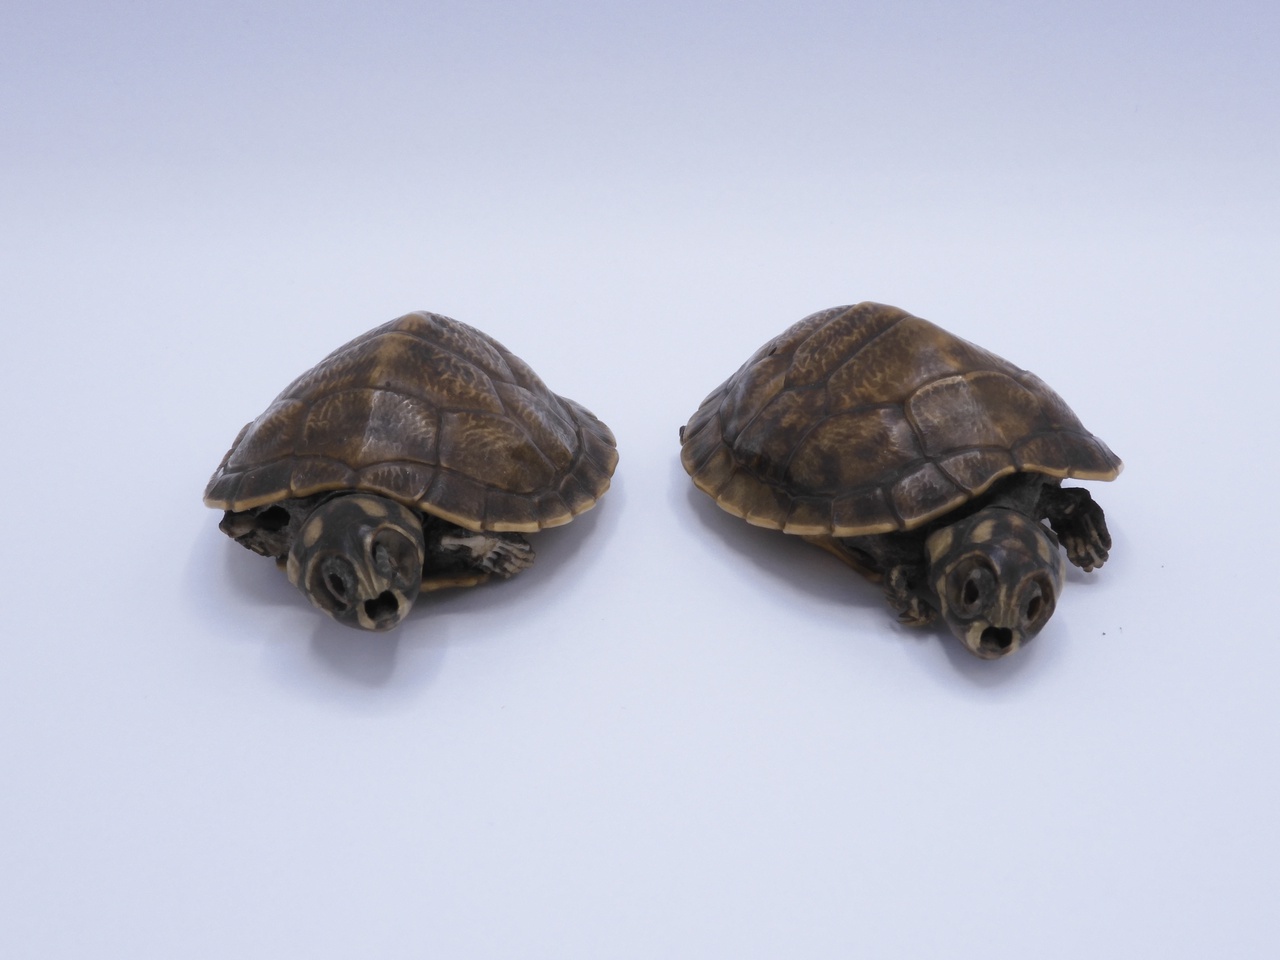 Twee schildpadden